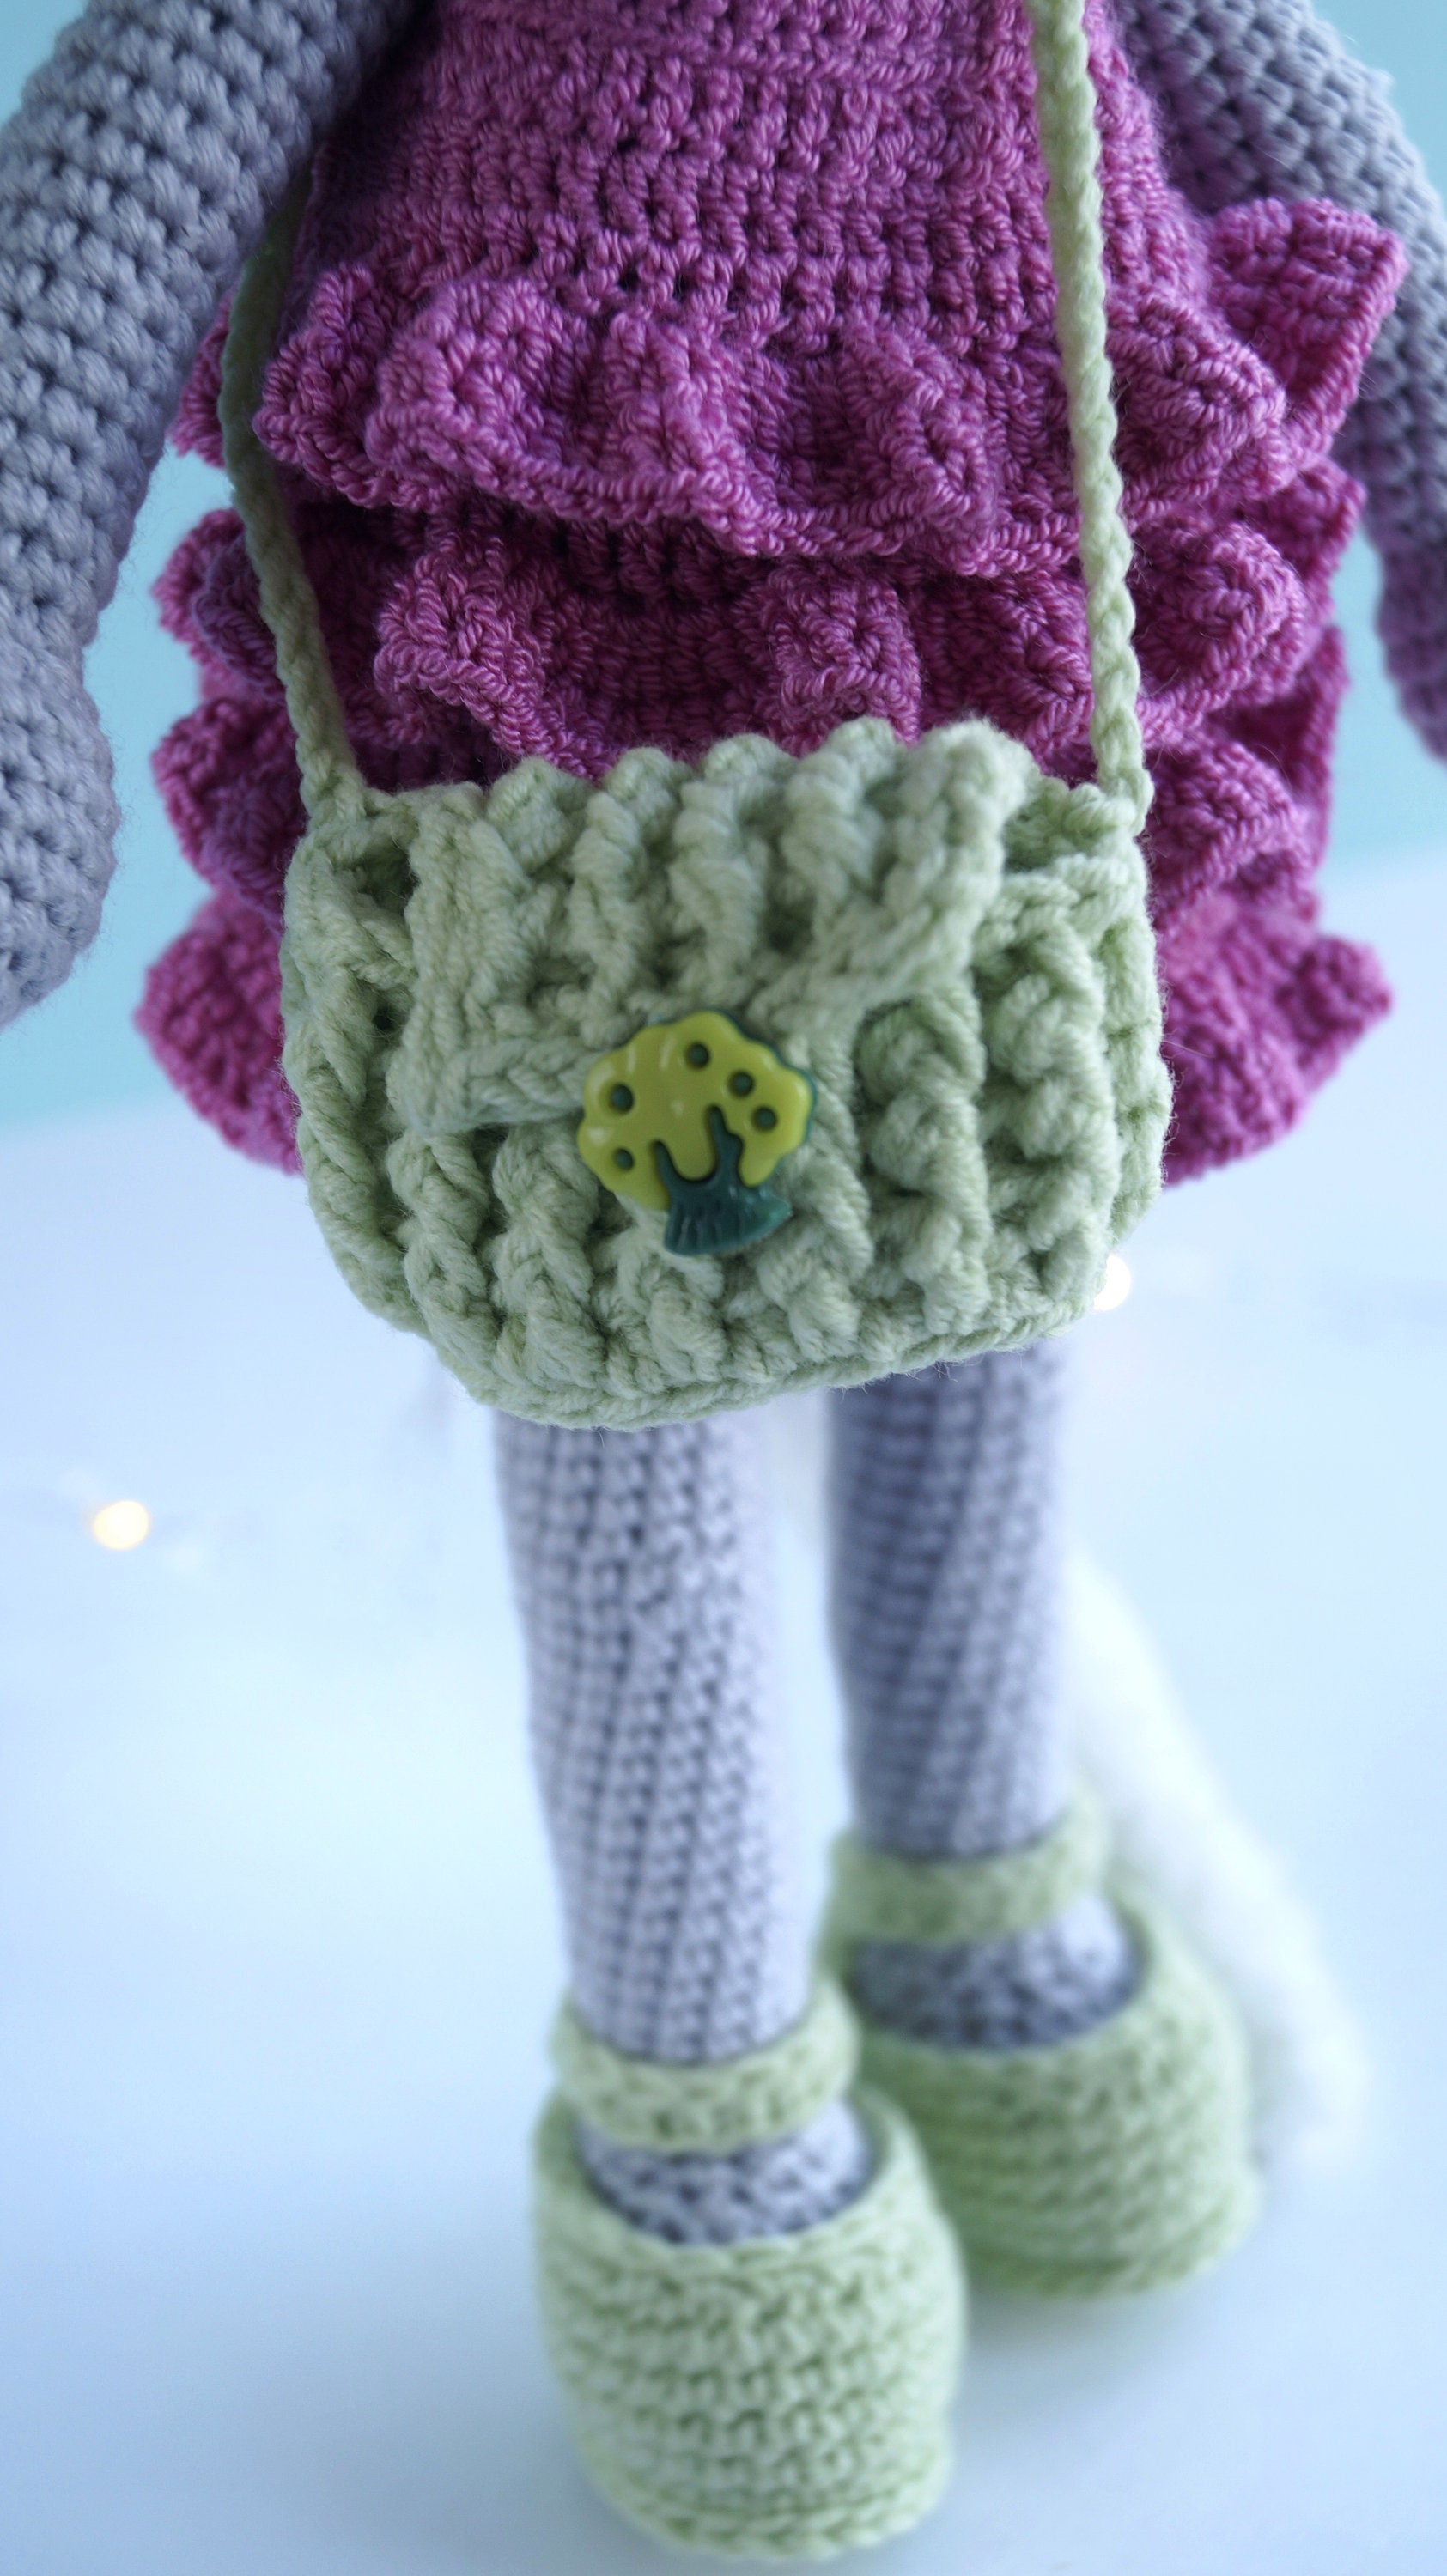 Crochet cat amigurumi pattern crochet cat doll | Etsy